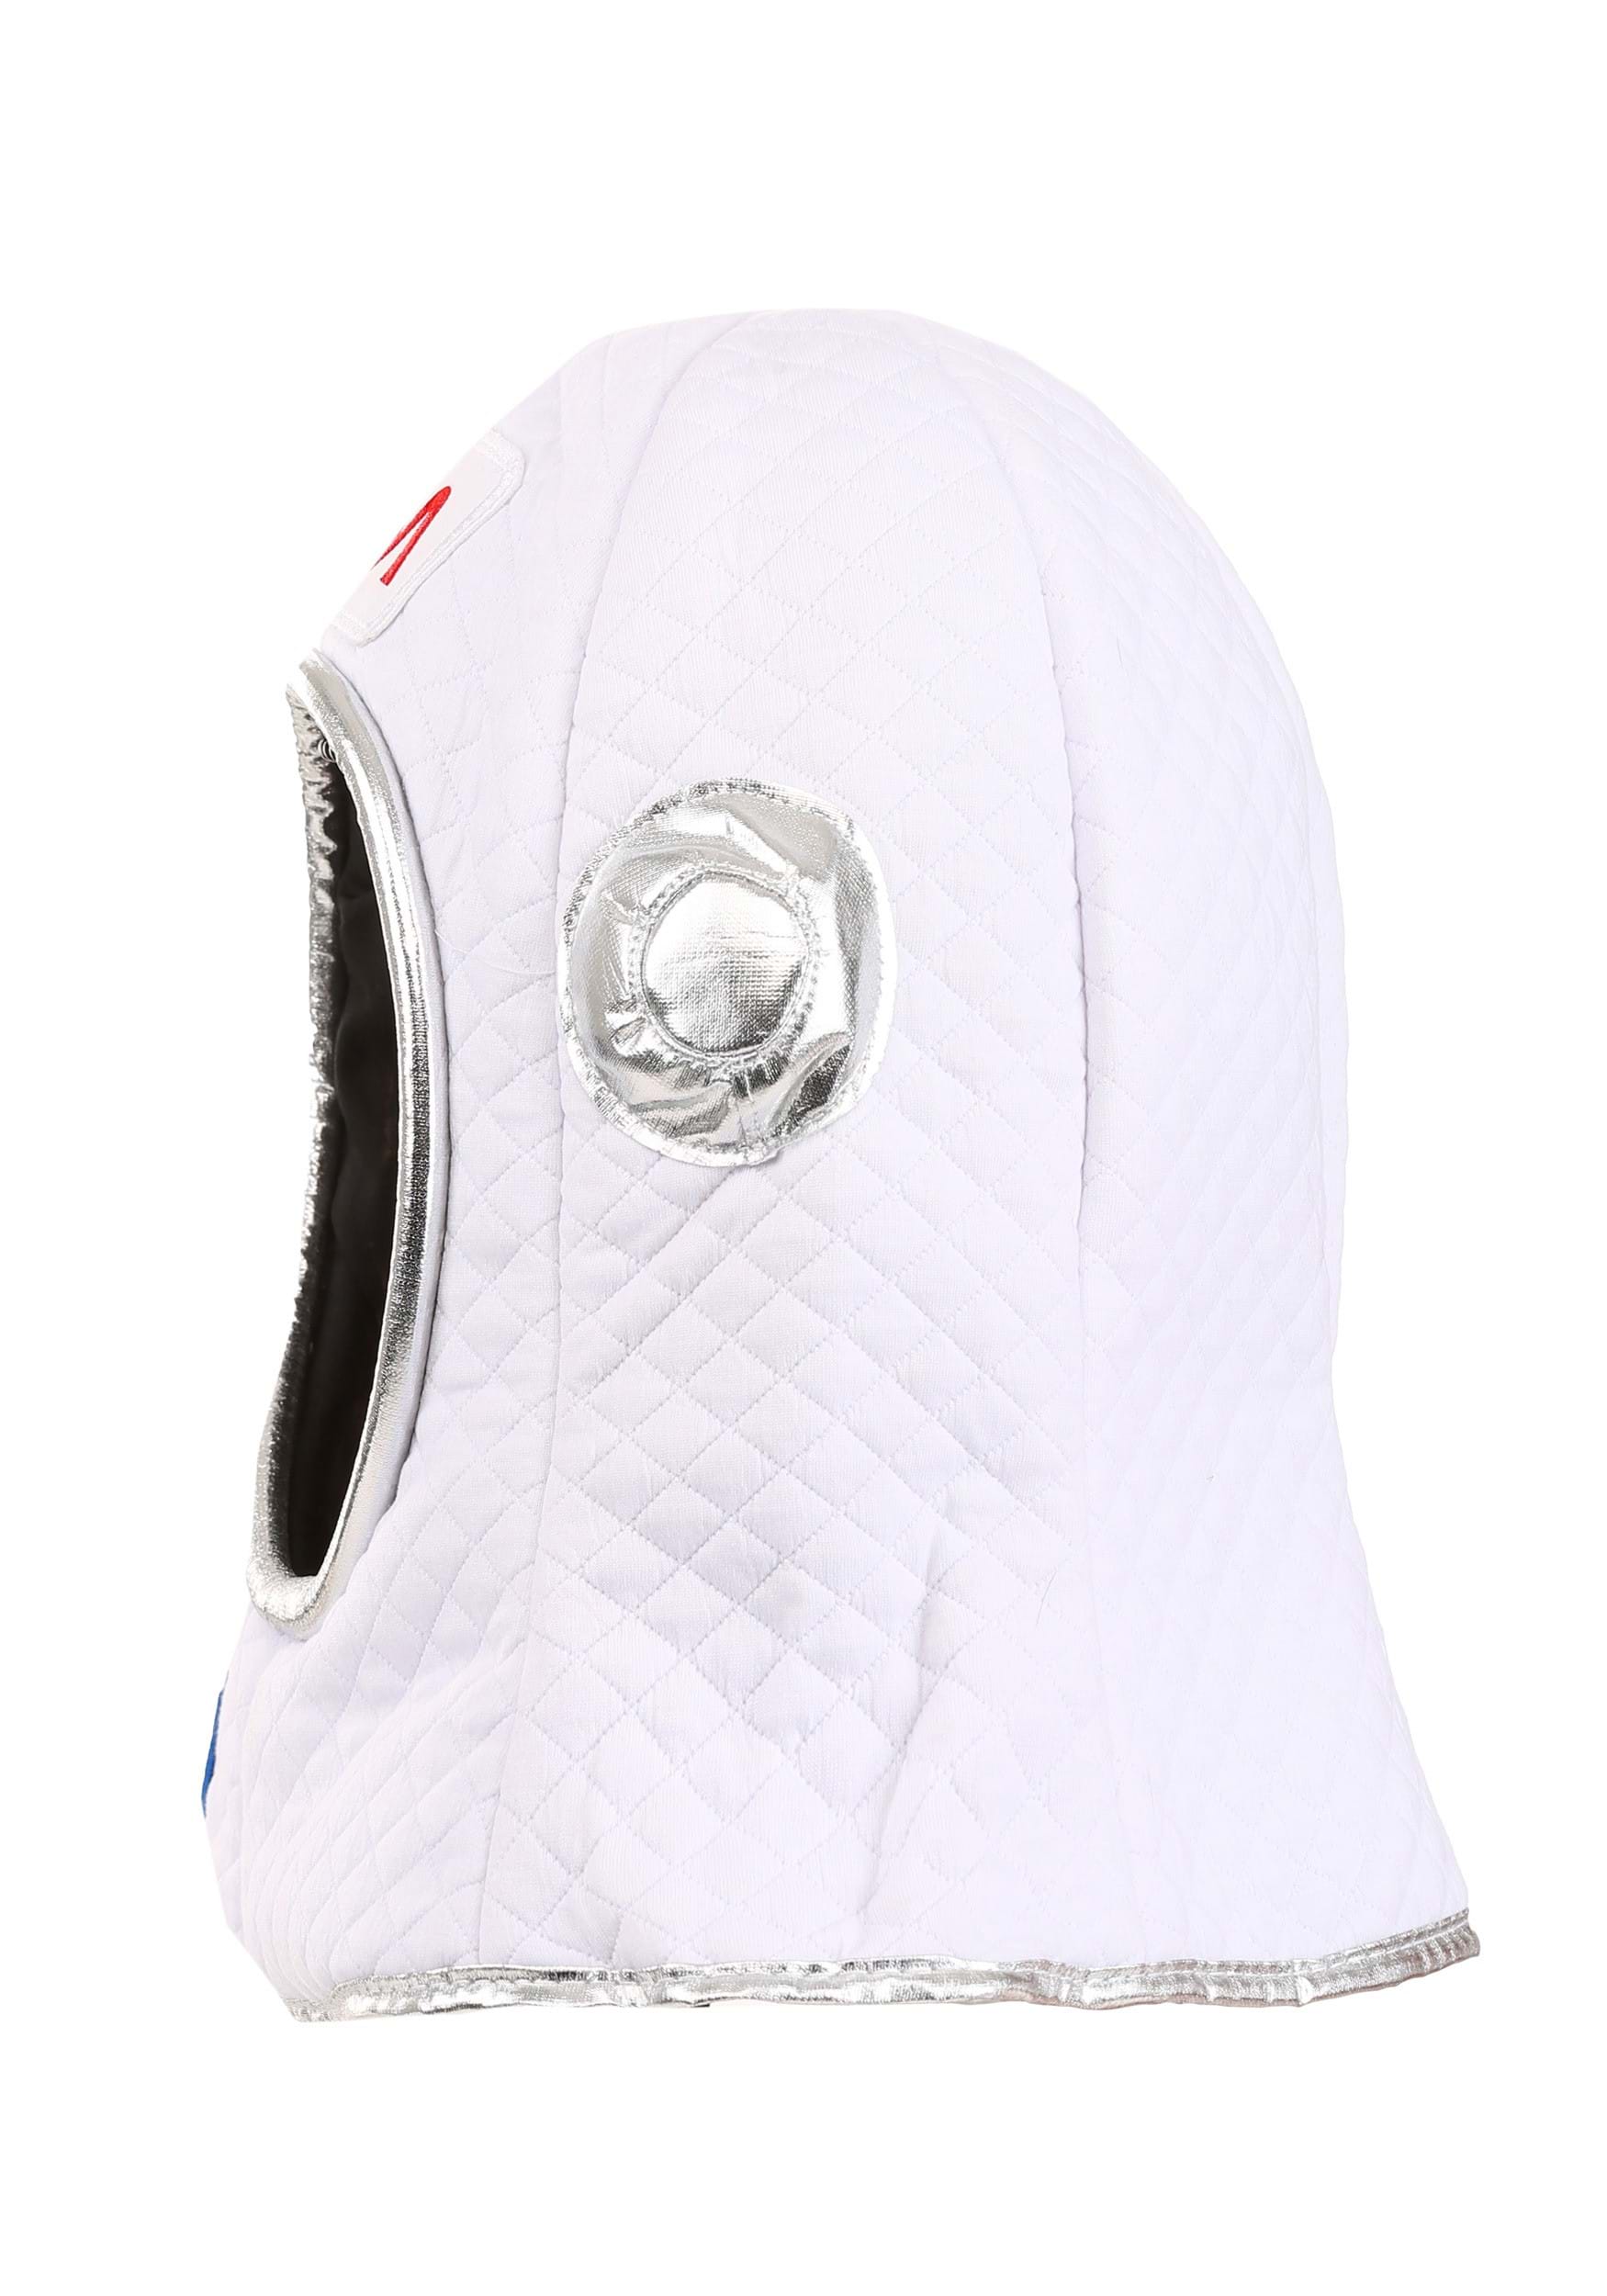 Astronaut Space Costume Plush Helmet